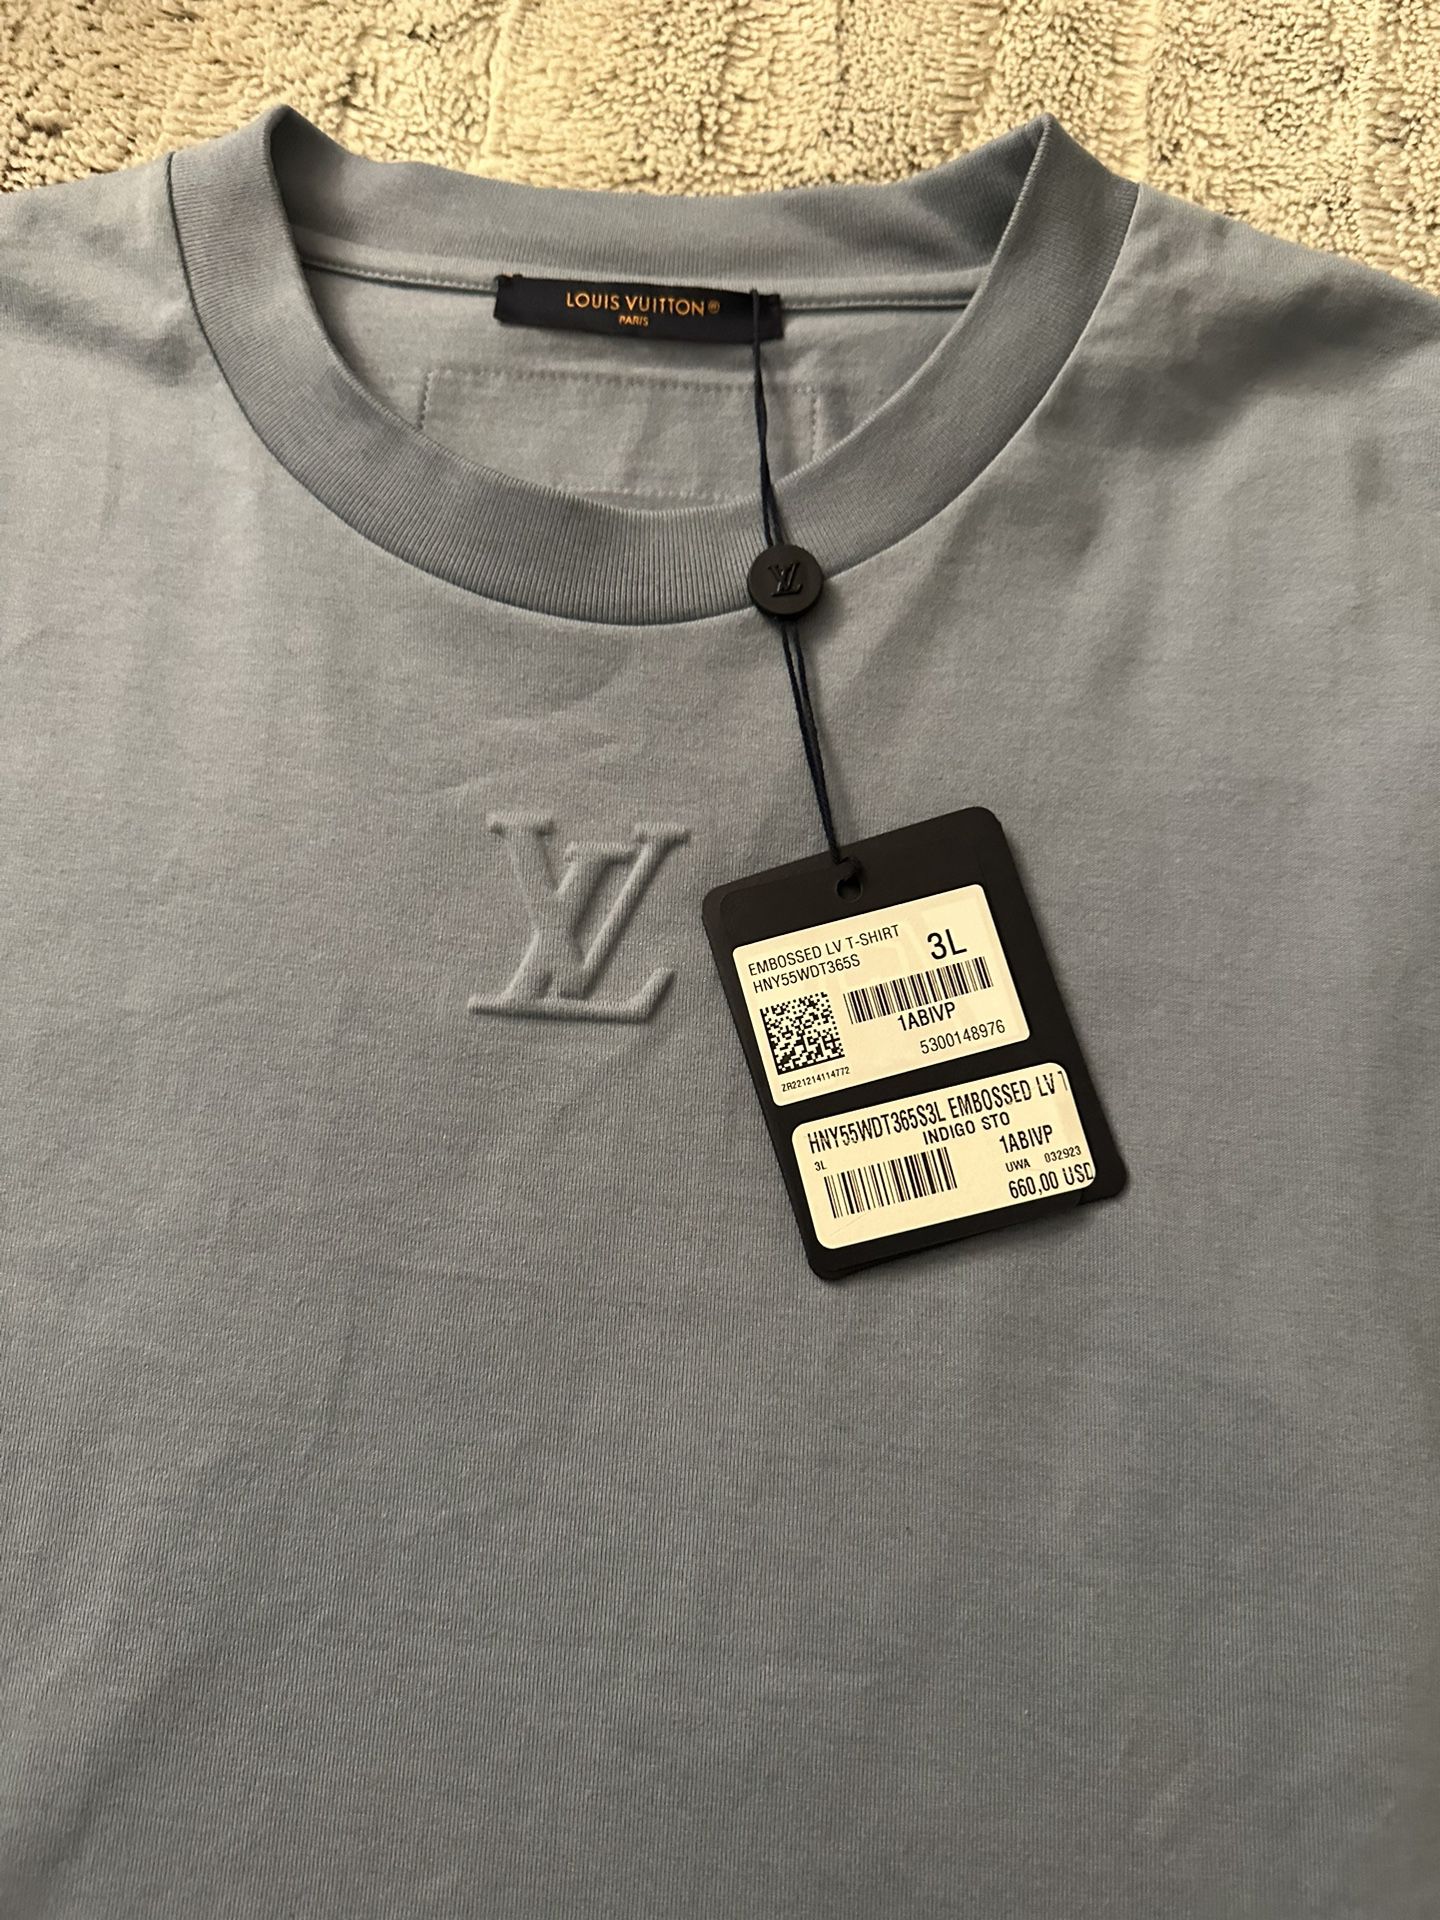 Louis Vuitton Embossed LV Tshirt